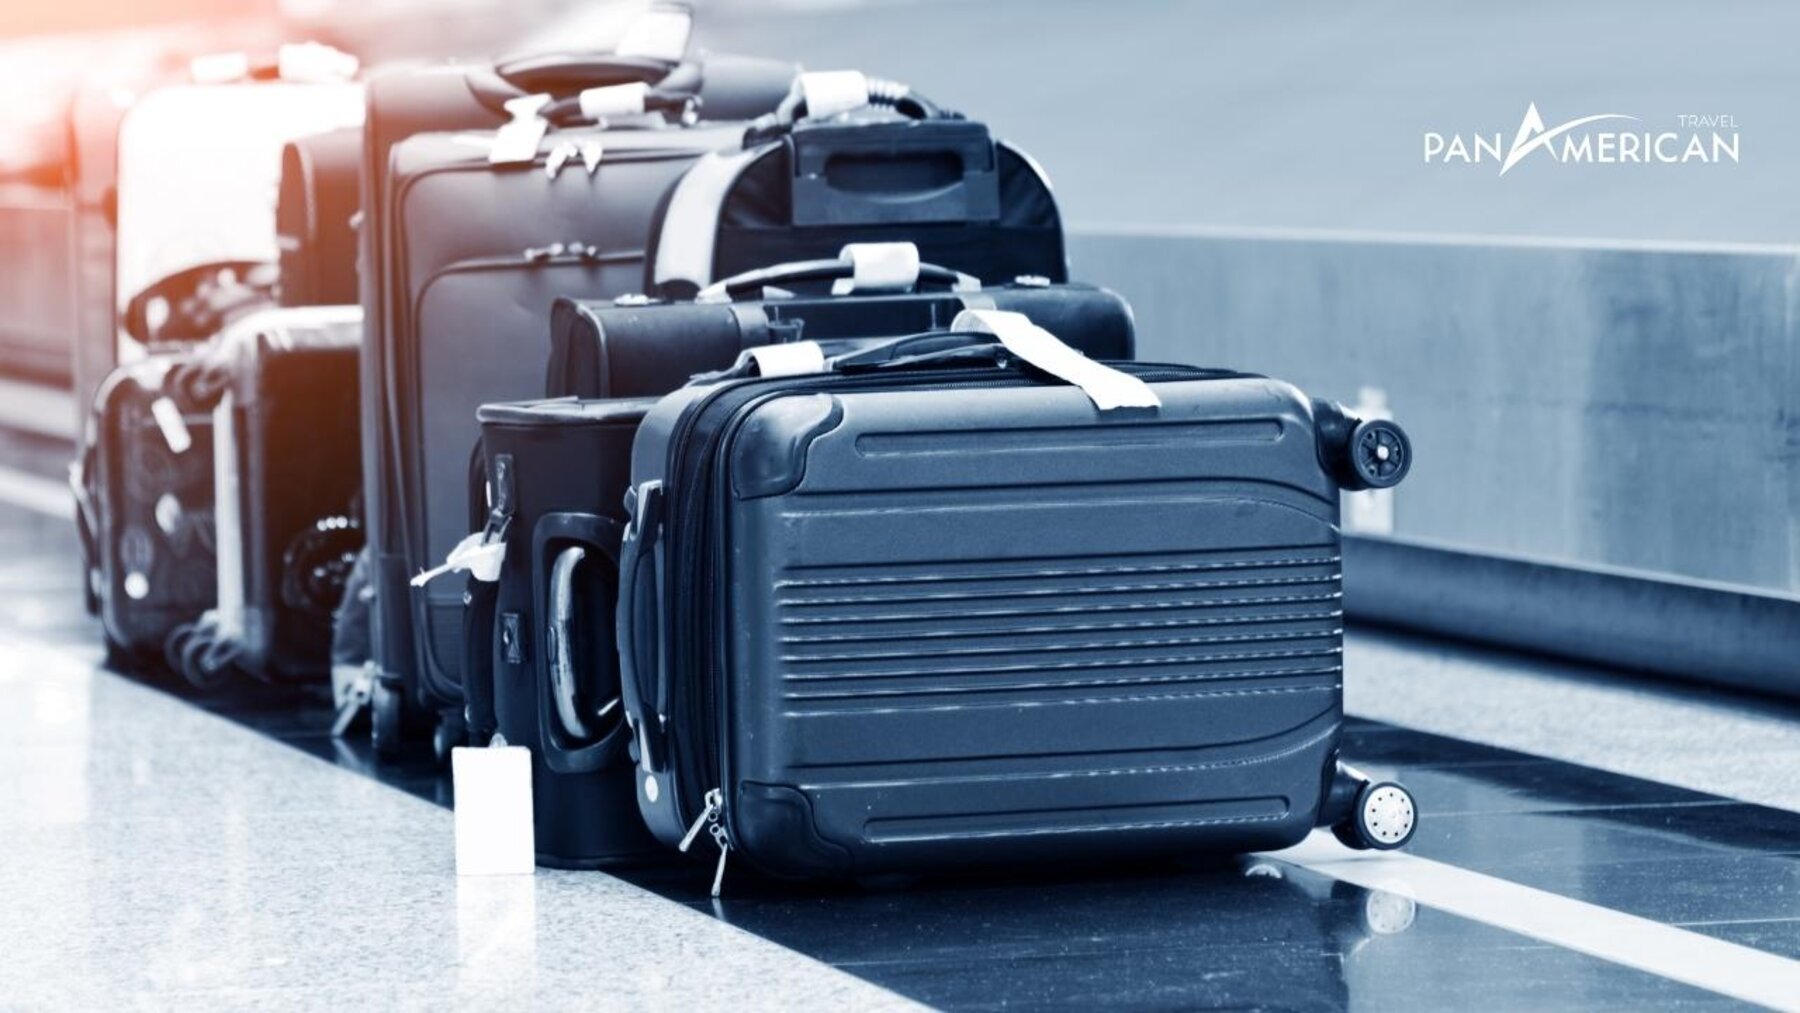 Quy định về giới hạn kích thước hành lý theo hãng hàng không - Gallery Image